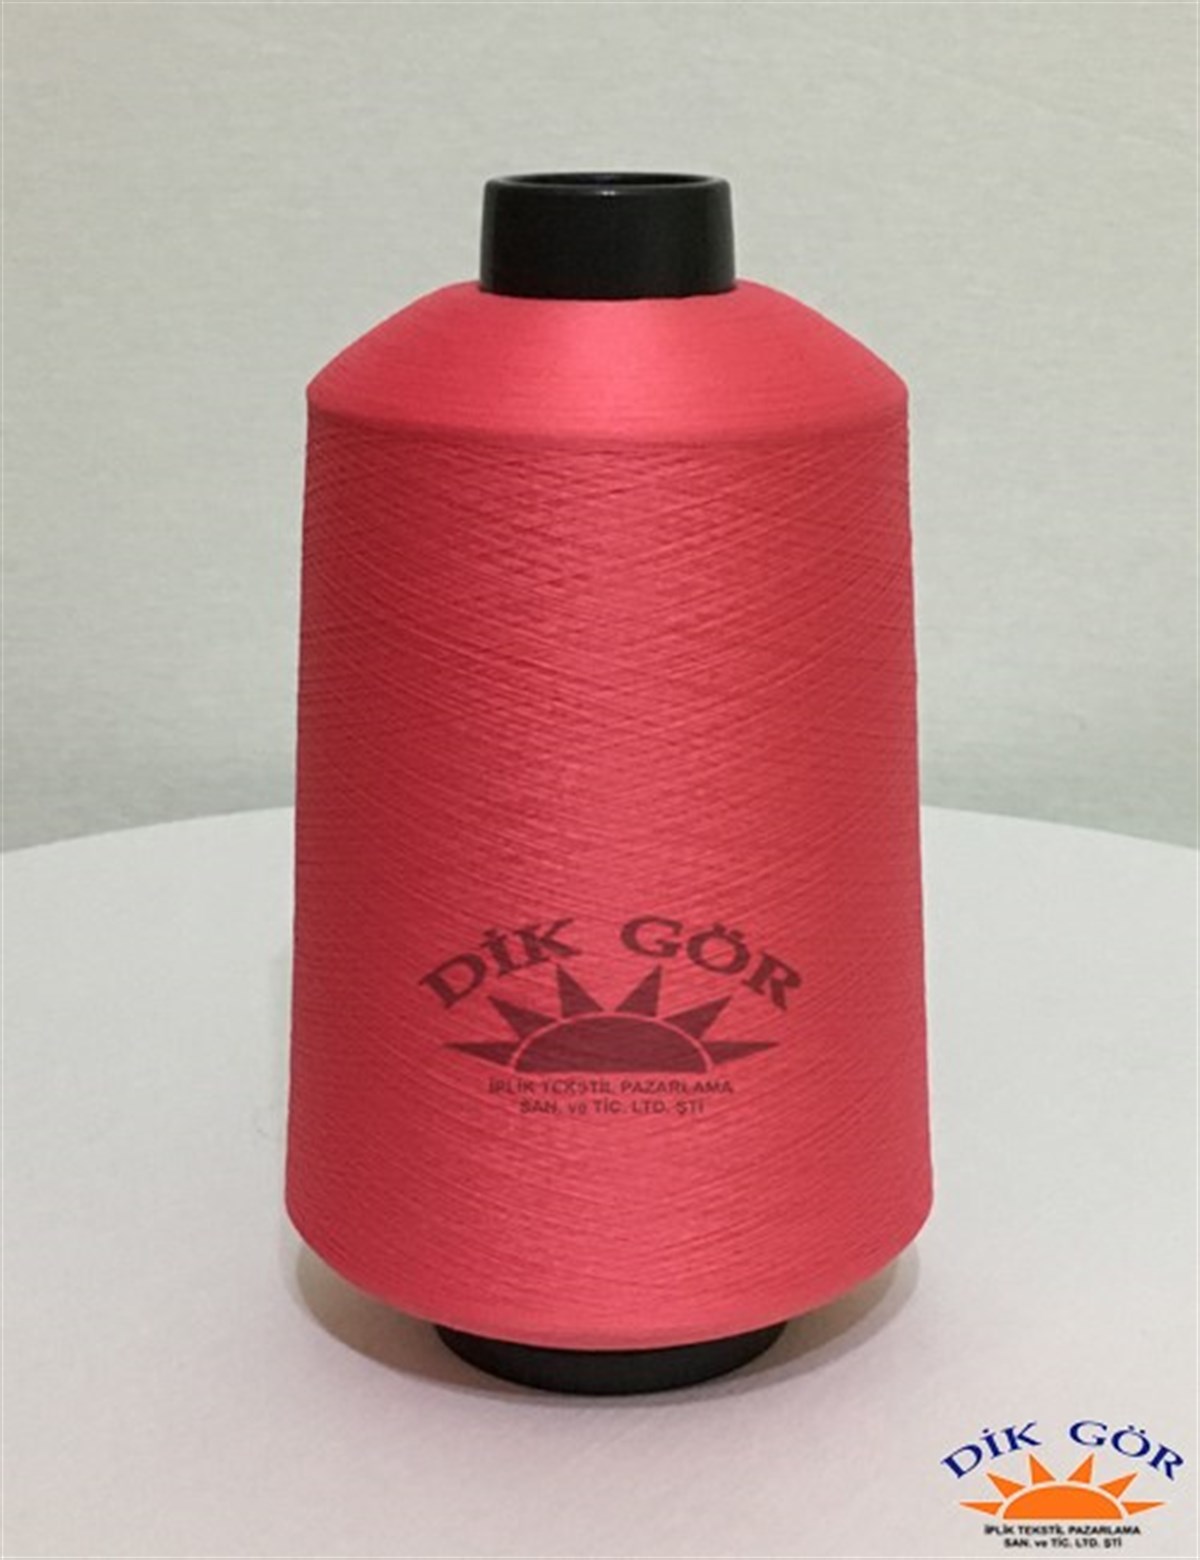 150 Denye 300 Renkli Tekstürize Polyester Overlok İpliği (Muz İplik) |  06.150.0300 | Dikgör Tekstürize Polyester İplik